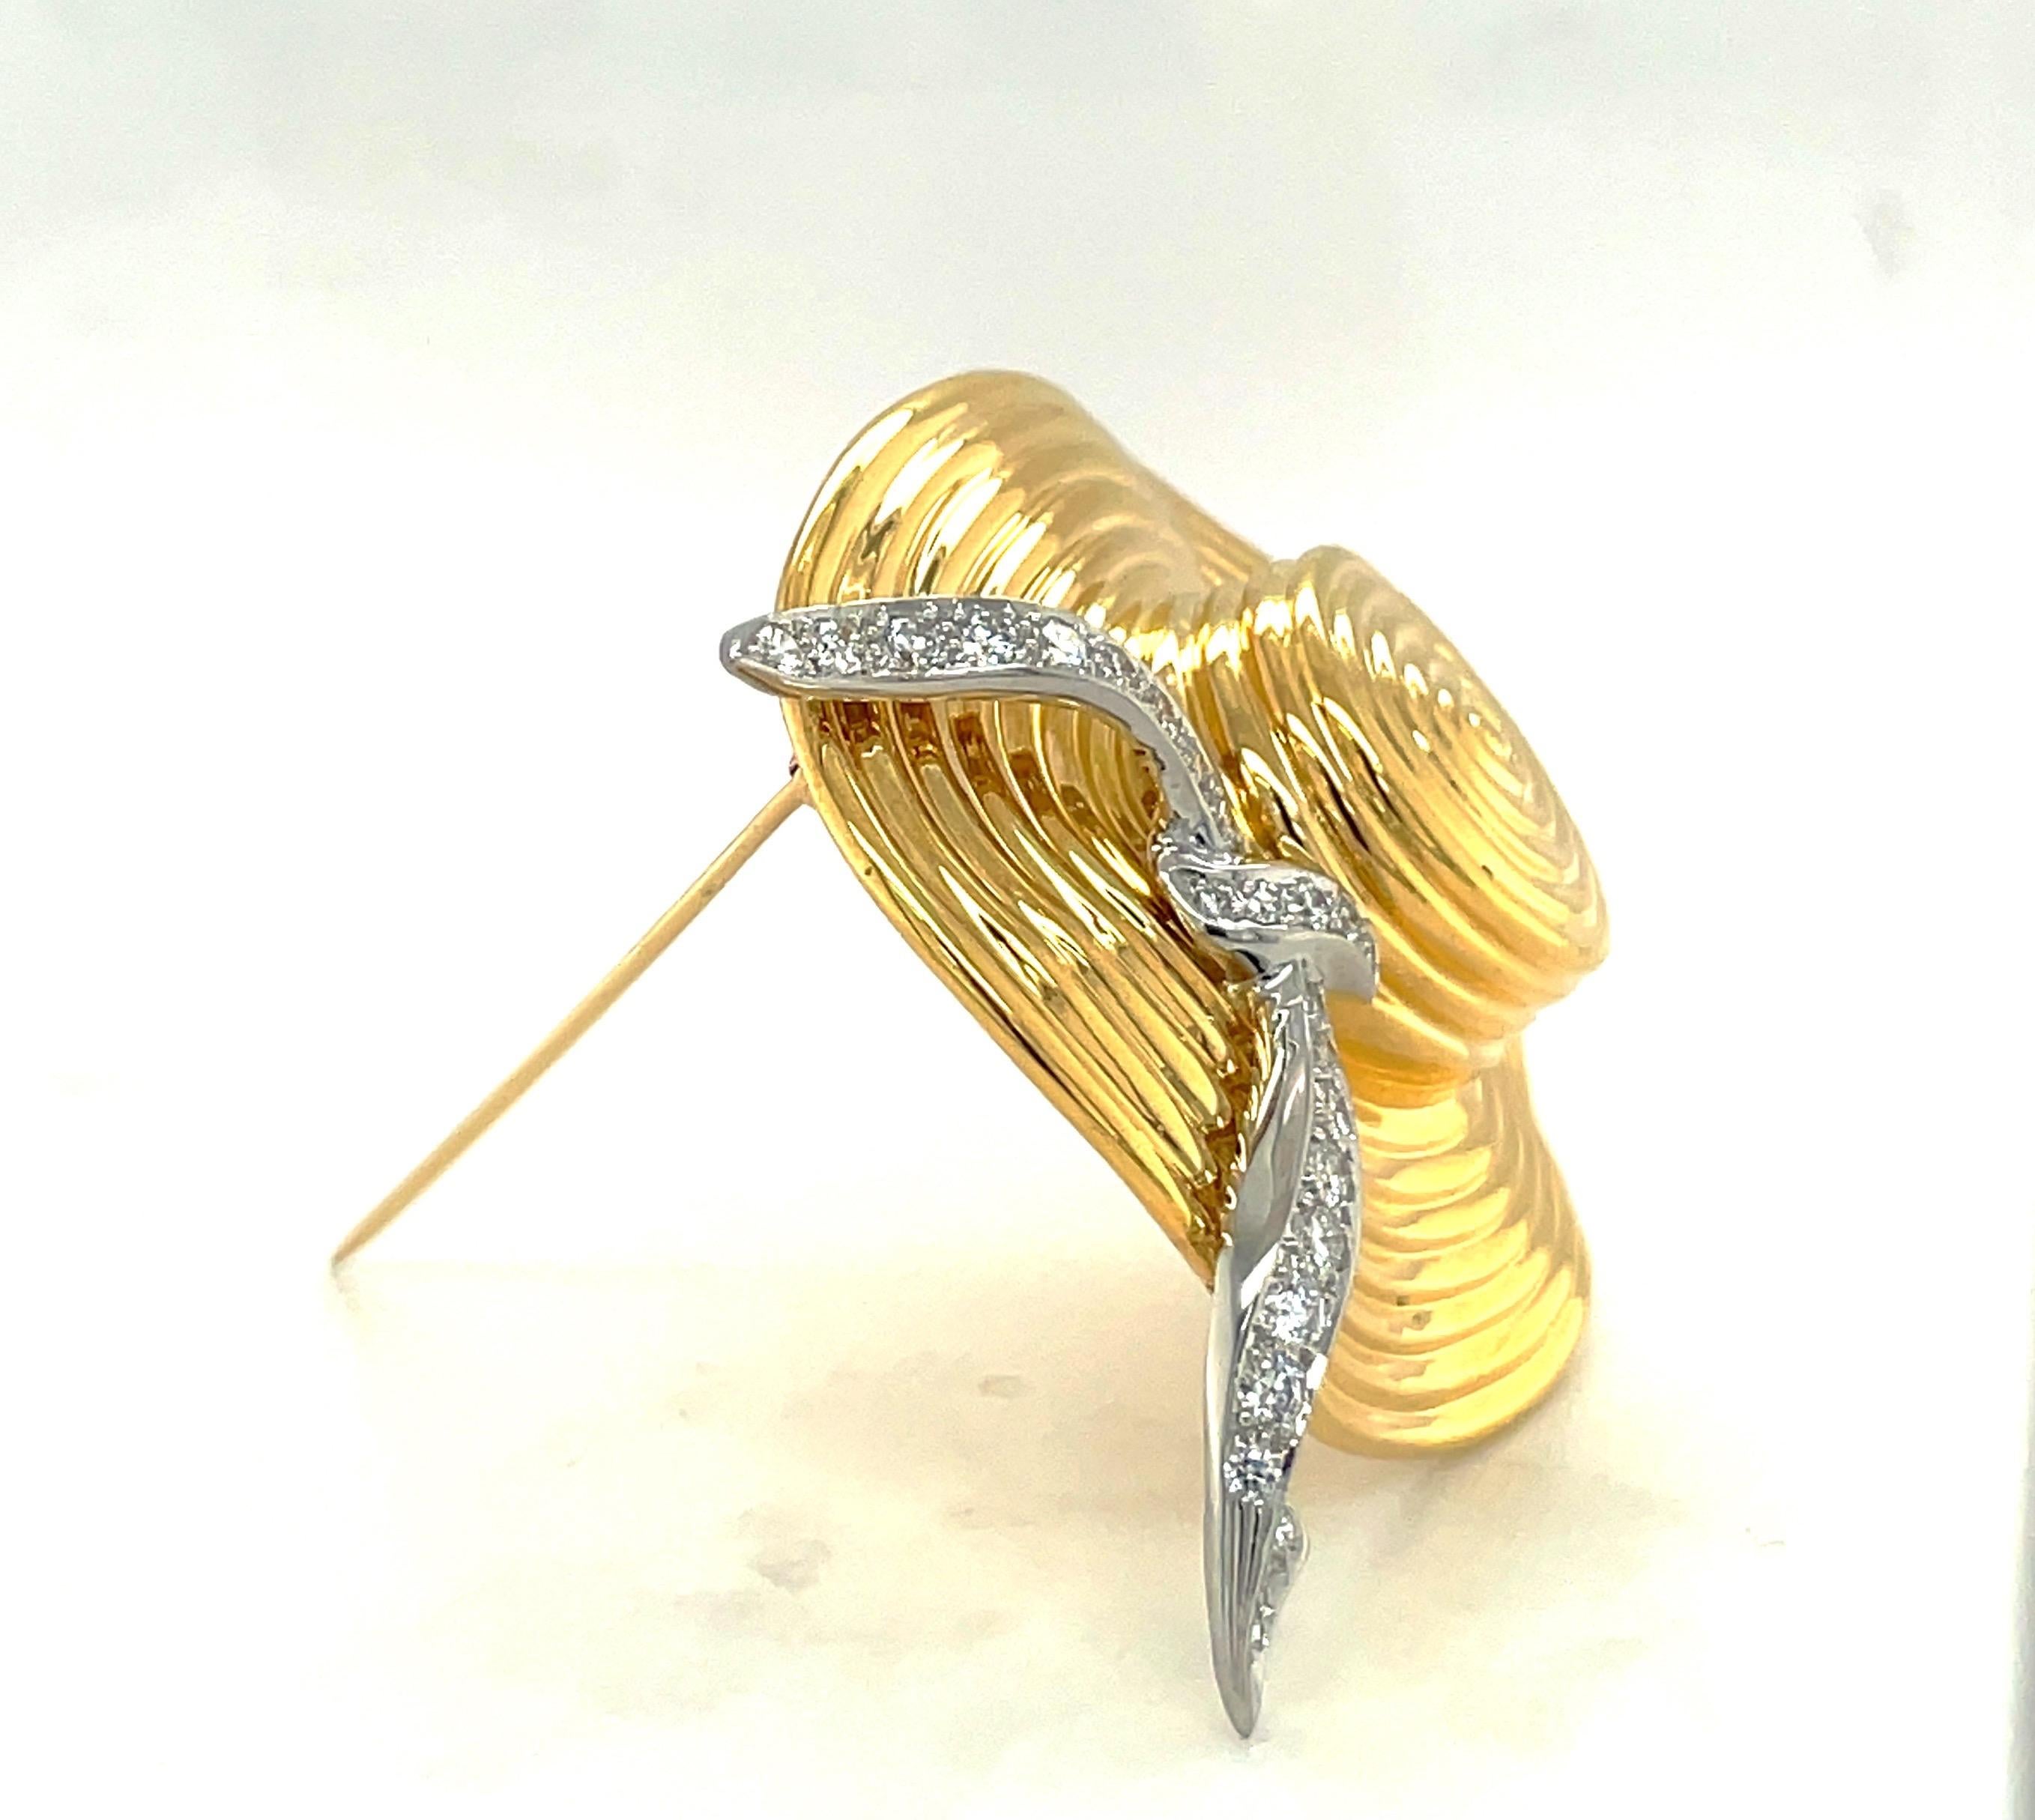 Entworfen von der legendären Charles Turi Jewelry Company.
Diese breitkrempige Hutbrosche aus 18 Karat Gelbgold hat ein mit runden Brillanten besetztes Platinband.
Die Brosche misst 2 Zoll breit und 1 1/2 Zoll lang.
Gesamtgewicht der Diamanten 0,80